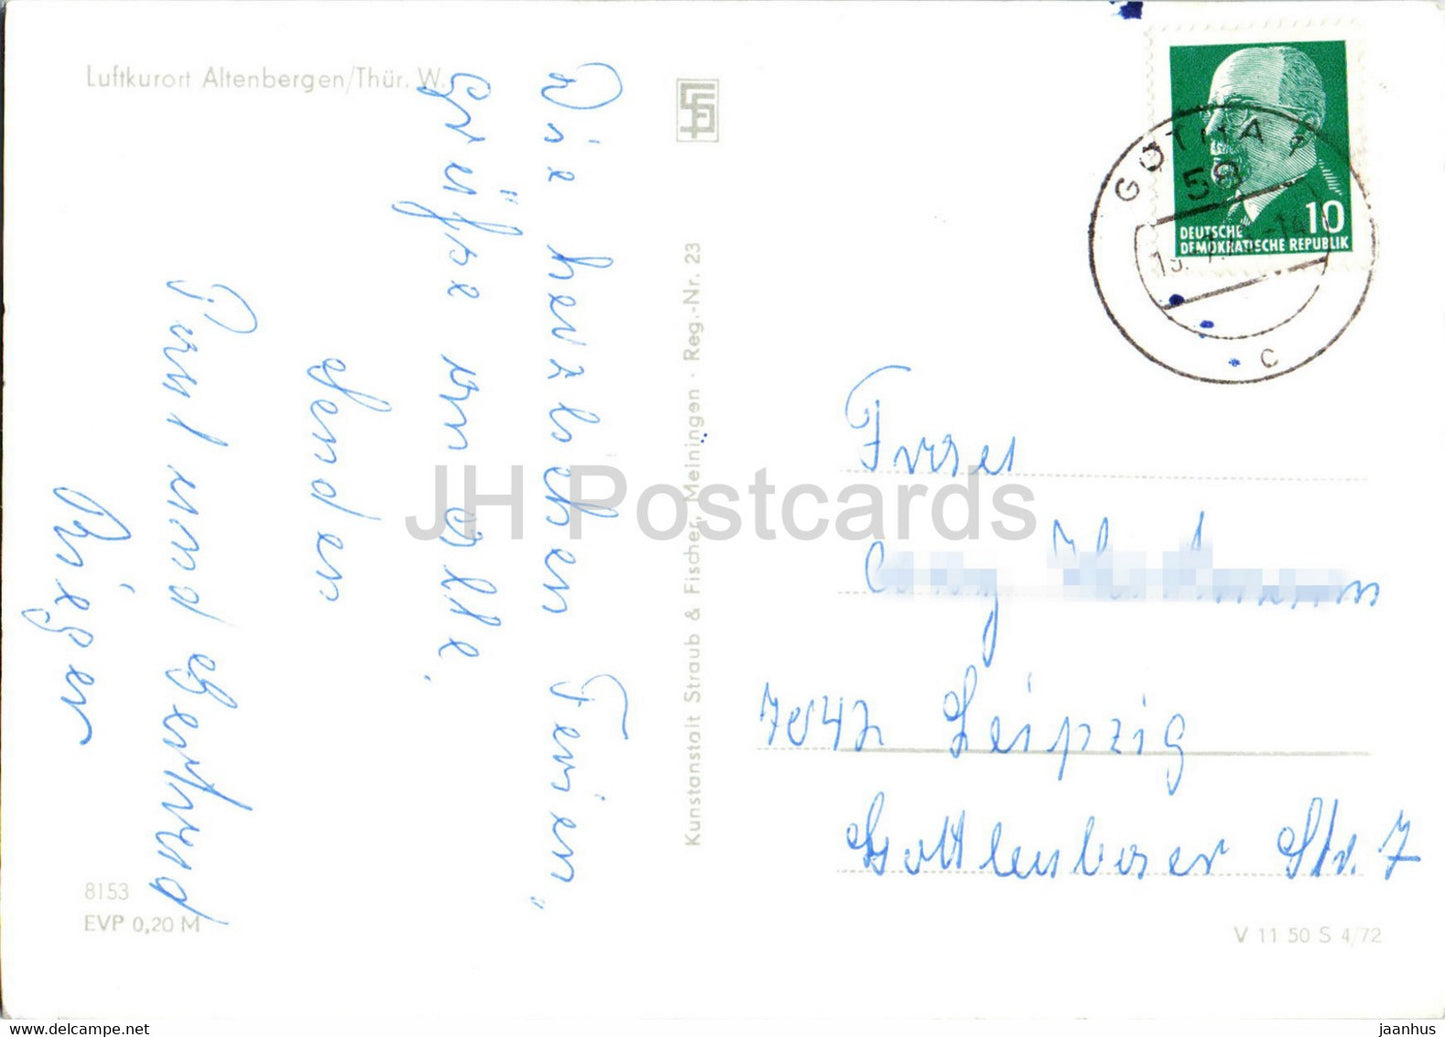 Luftkurort Altenbergen - alte Postkarte - Deutschland DDR - gebraucht